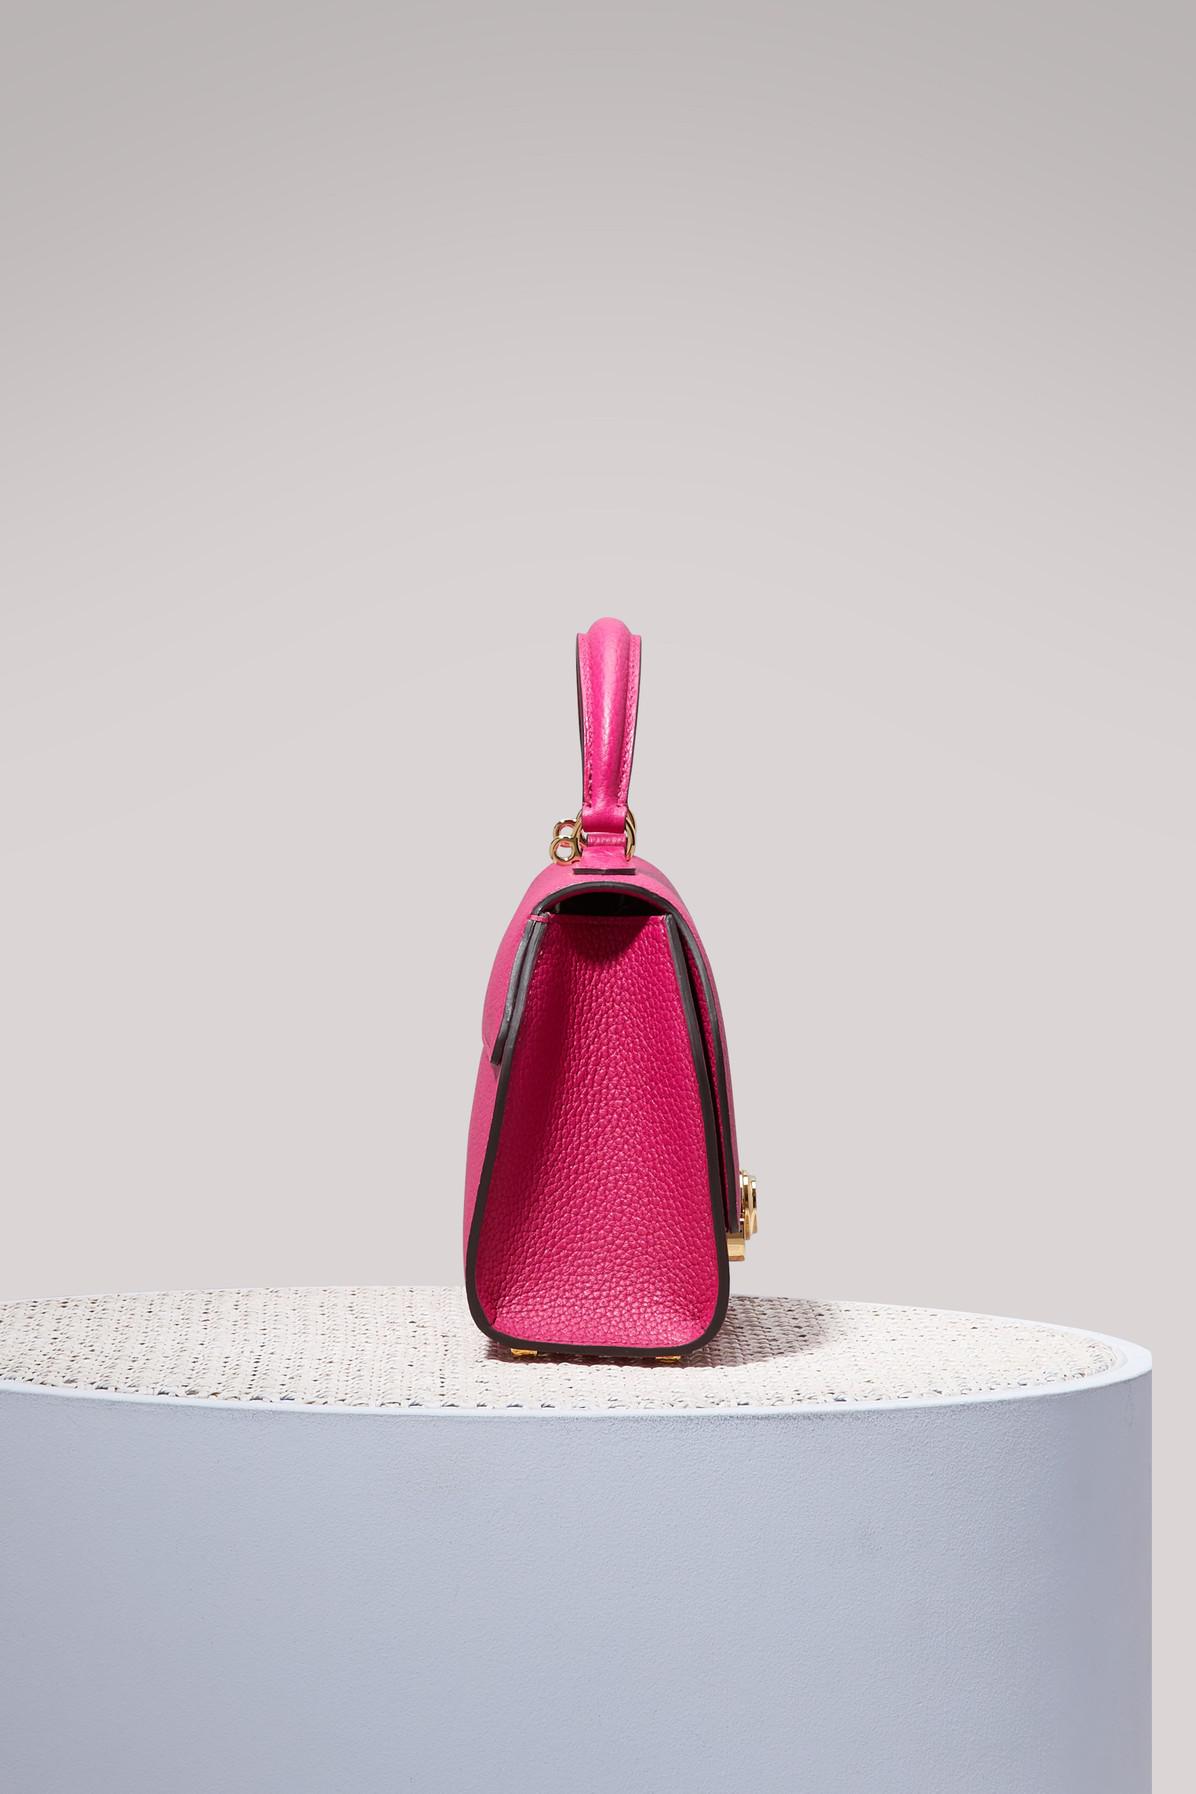 Moynat Rejane Mini Handbag in Pink